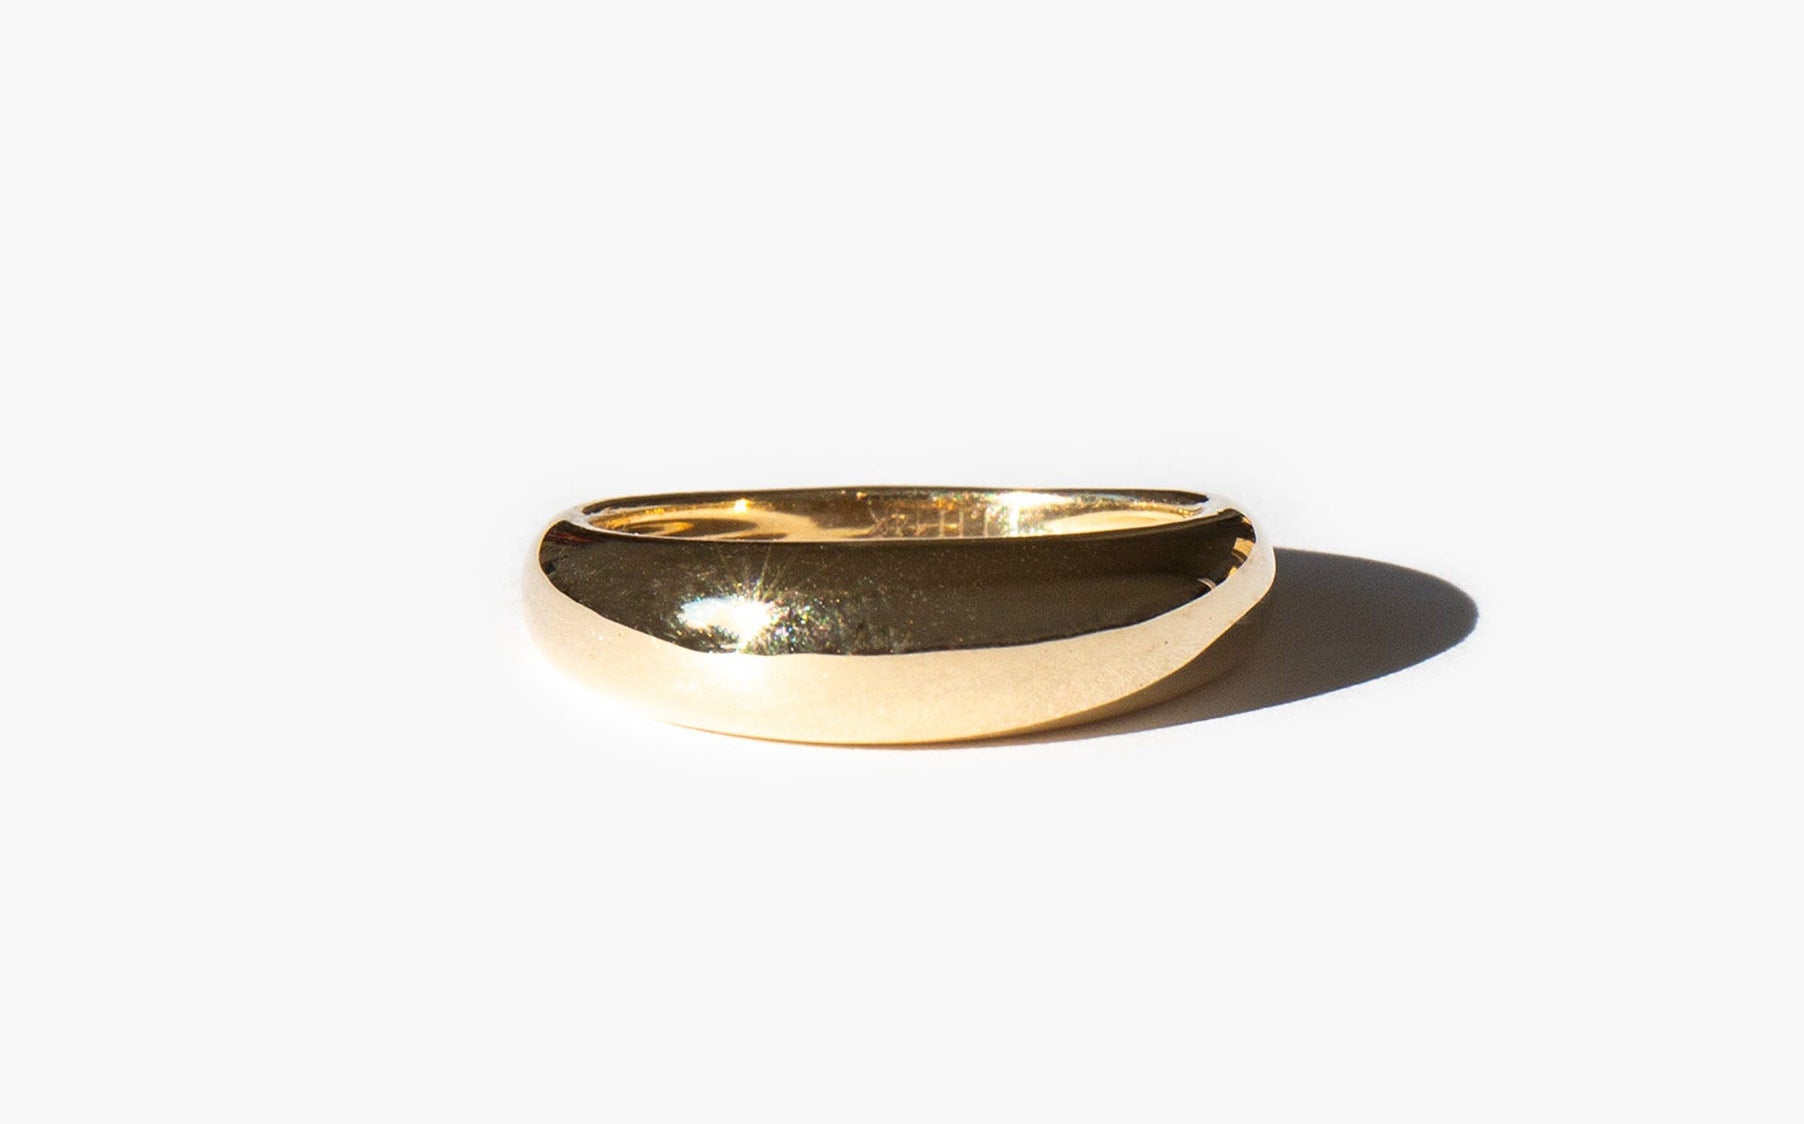 J. Hannah Form Ring I 14K Gold